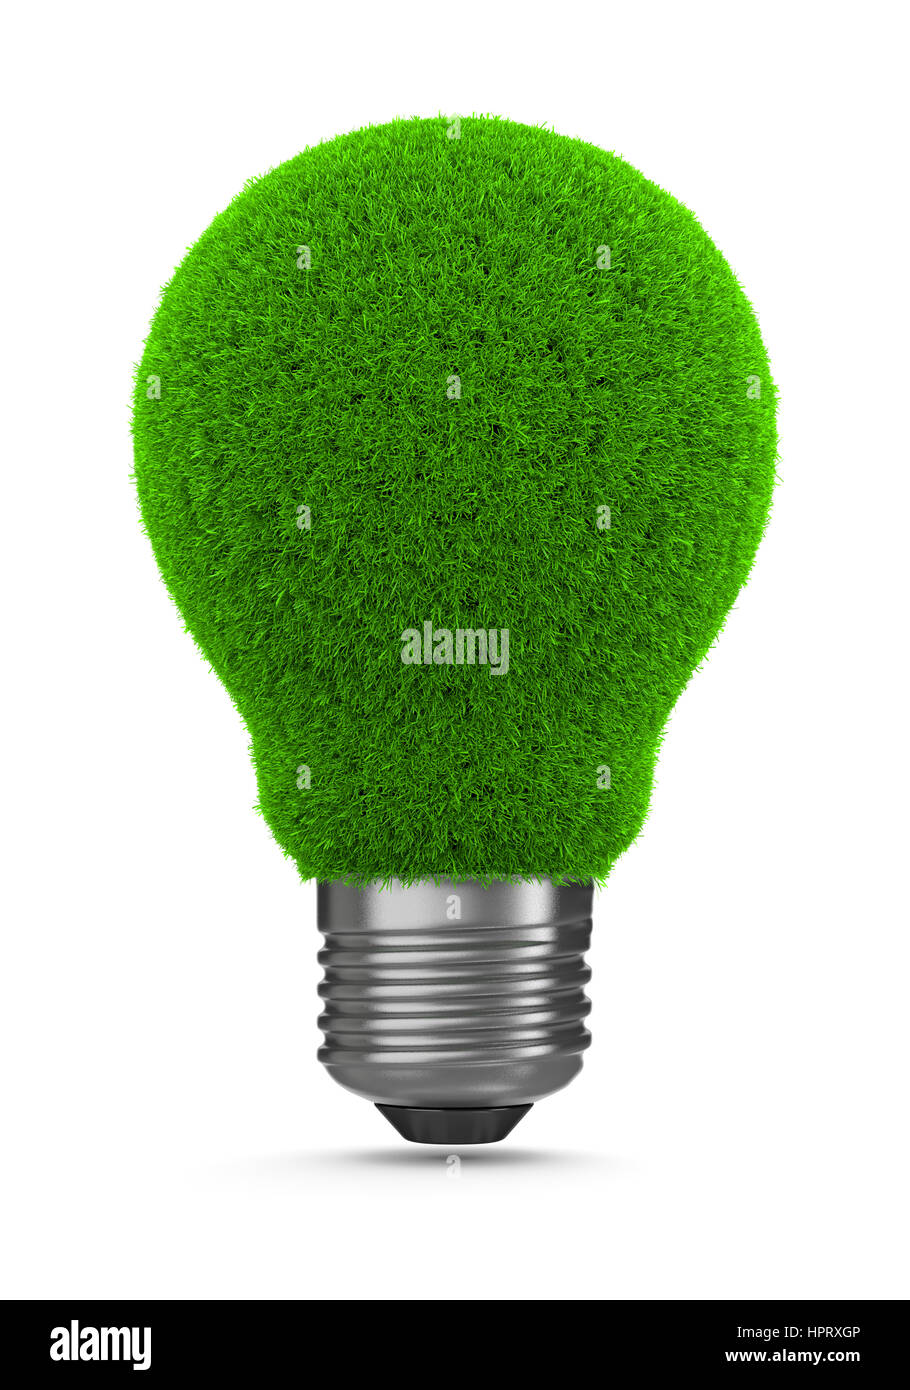 Grass Green Light Bulb on White Background 3D Illustration, Green Energy Concept Stock Photo